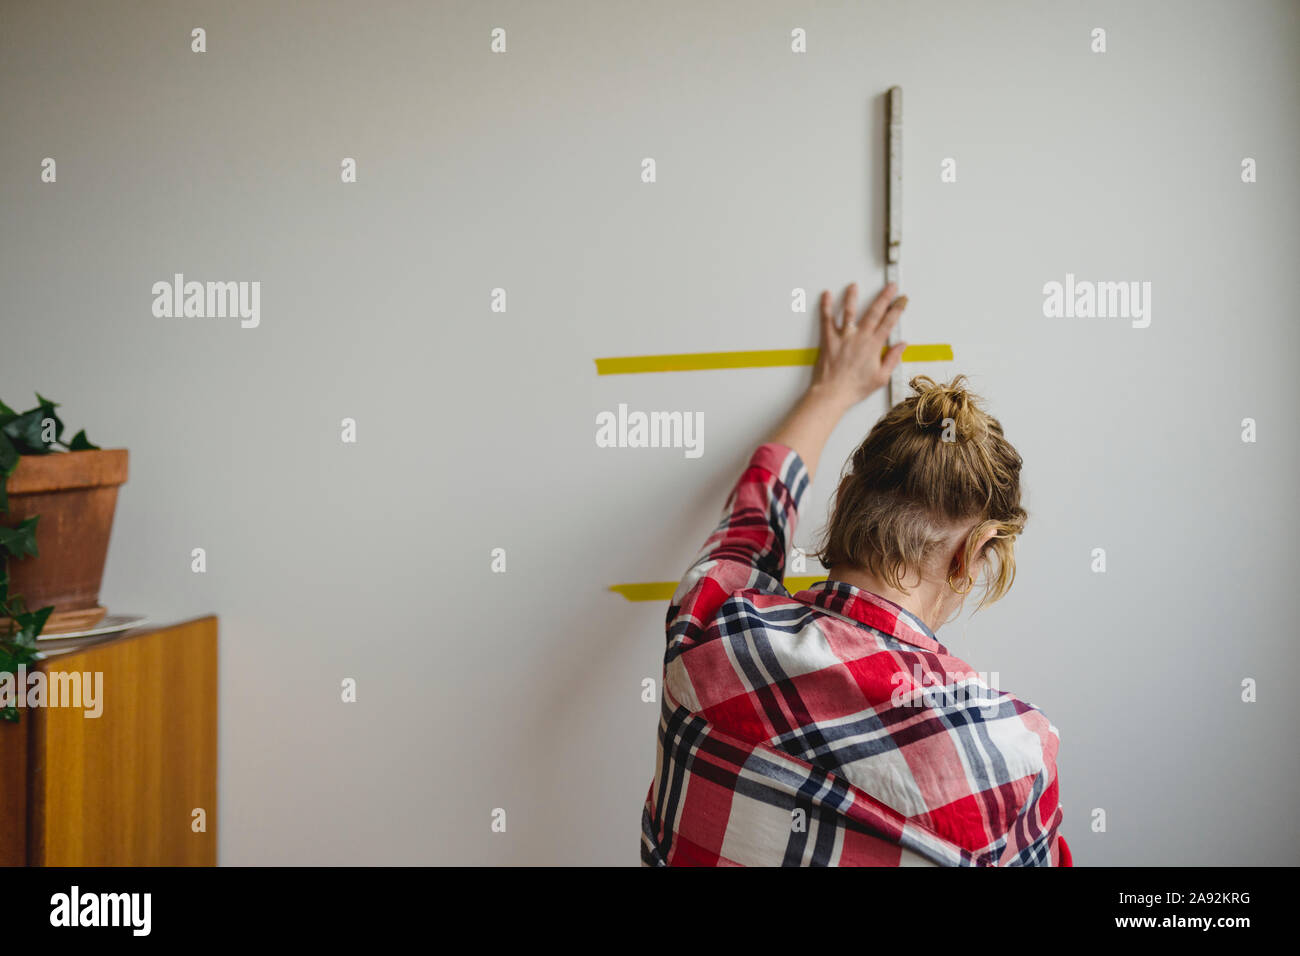 Woman leveling wall Stock Photo